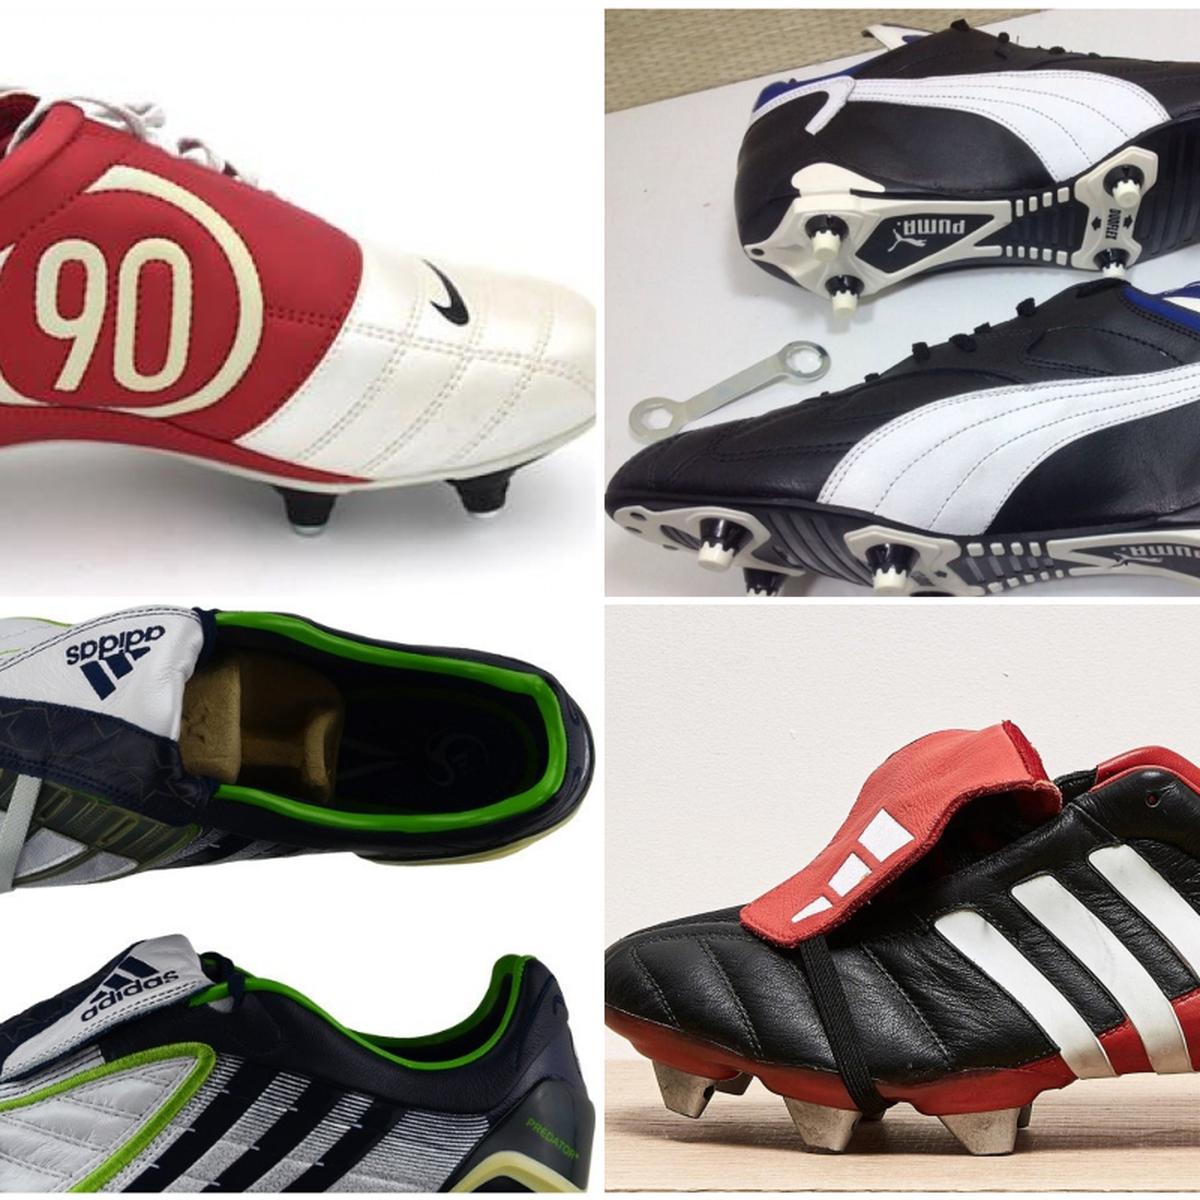 Chimpunes clásicos de fútbol: Nike, adidas, Pumas todas las que en la infancia soñamos con | FOTOS | FUTBOL-INTERNACIONAL | DEPOR